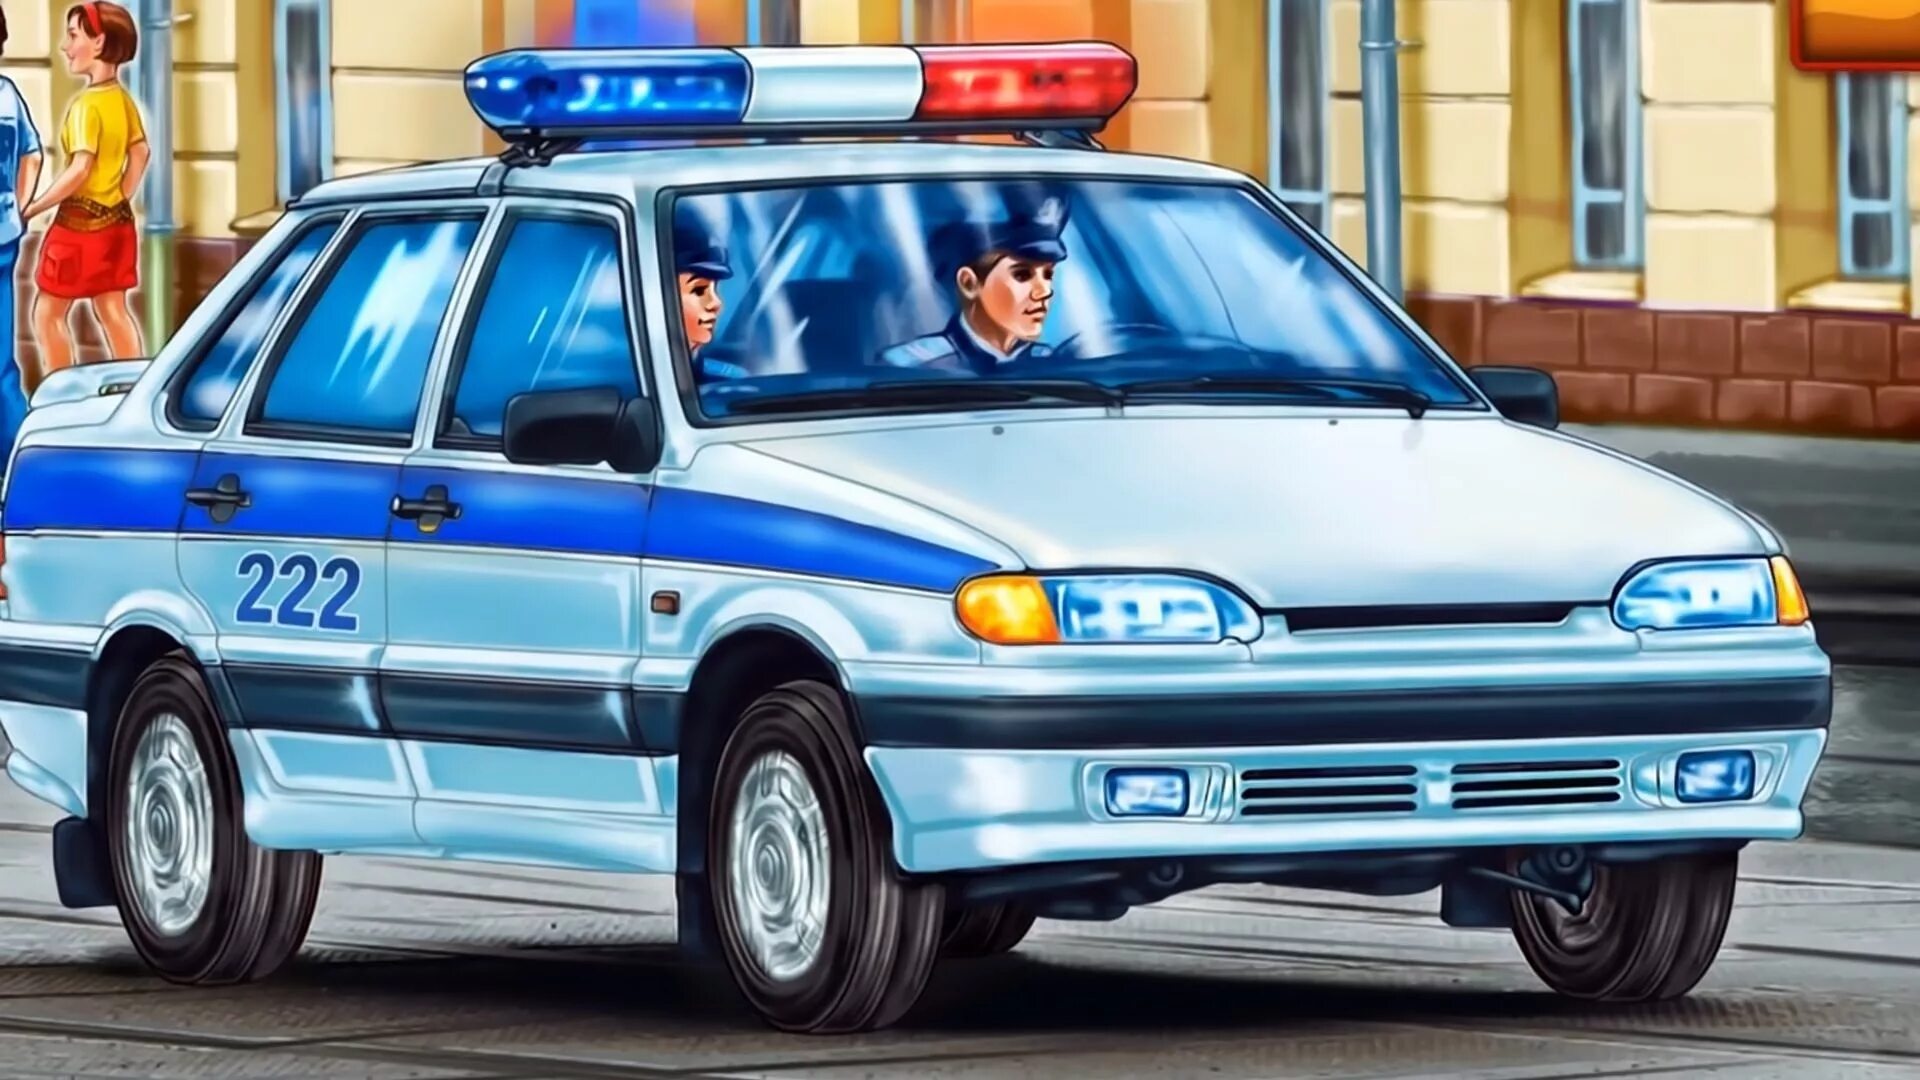 Картинка полиция машина. Полицейская машина. Специальные машины. Милицейская машина мультяшная. Полиция машина для детей.